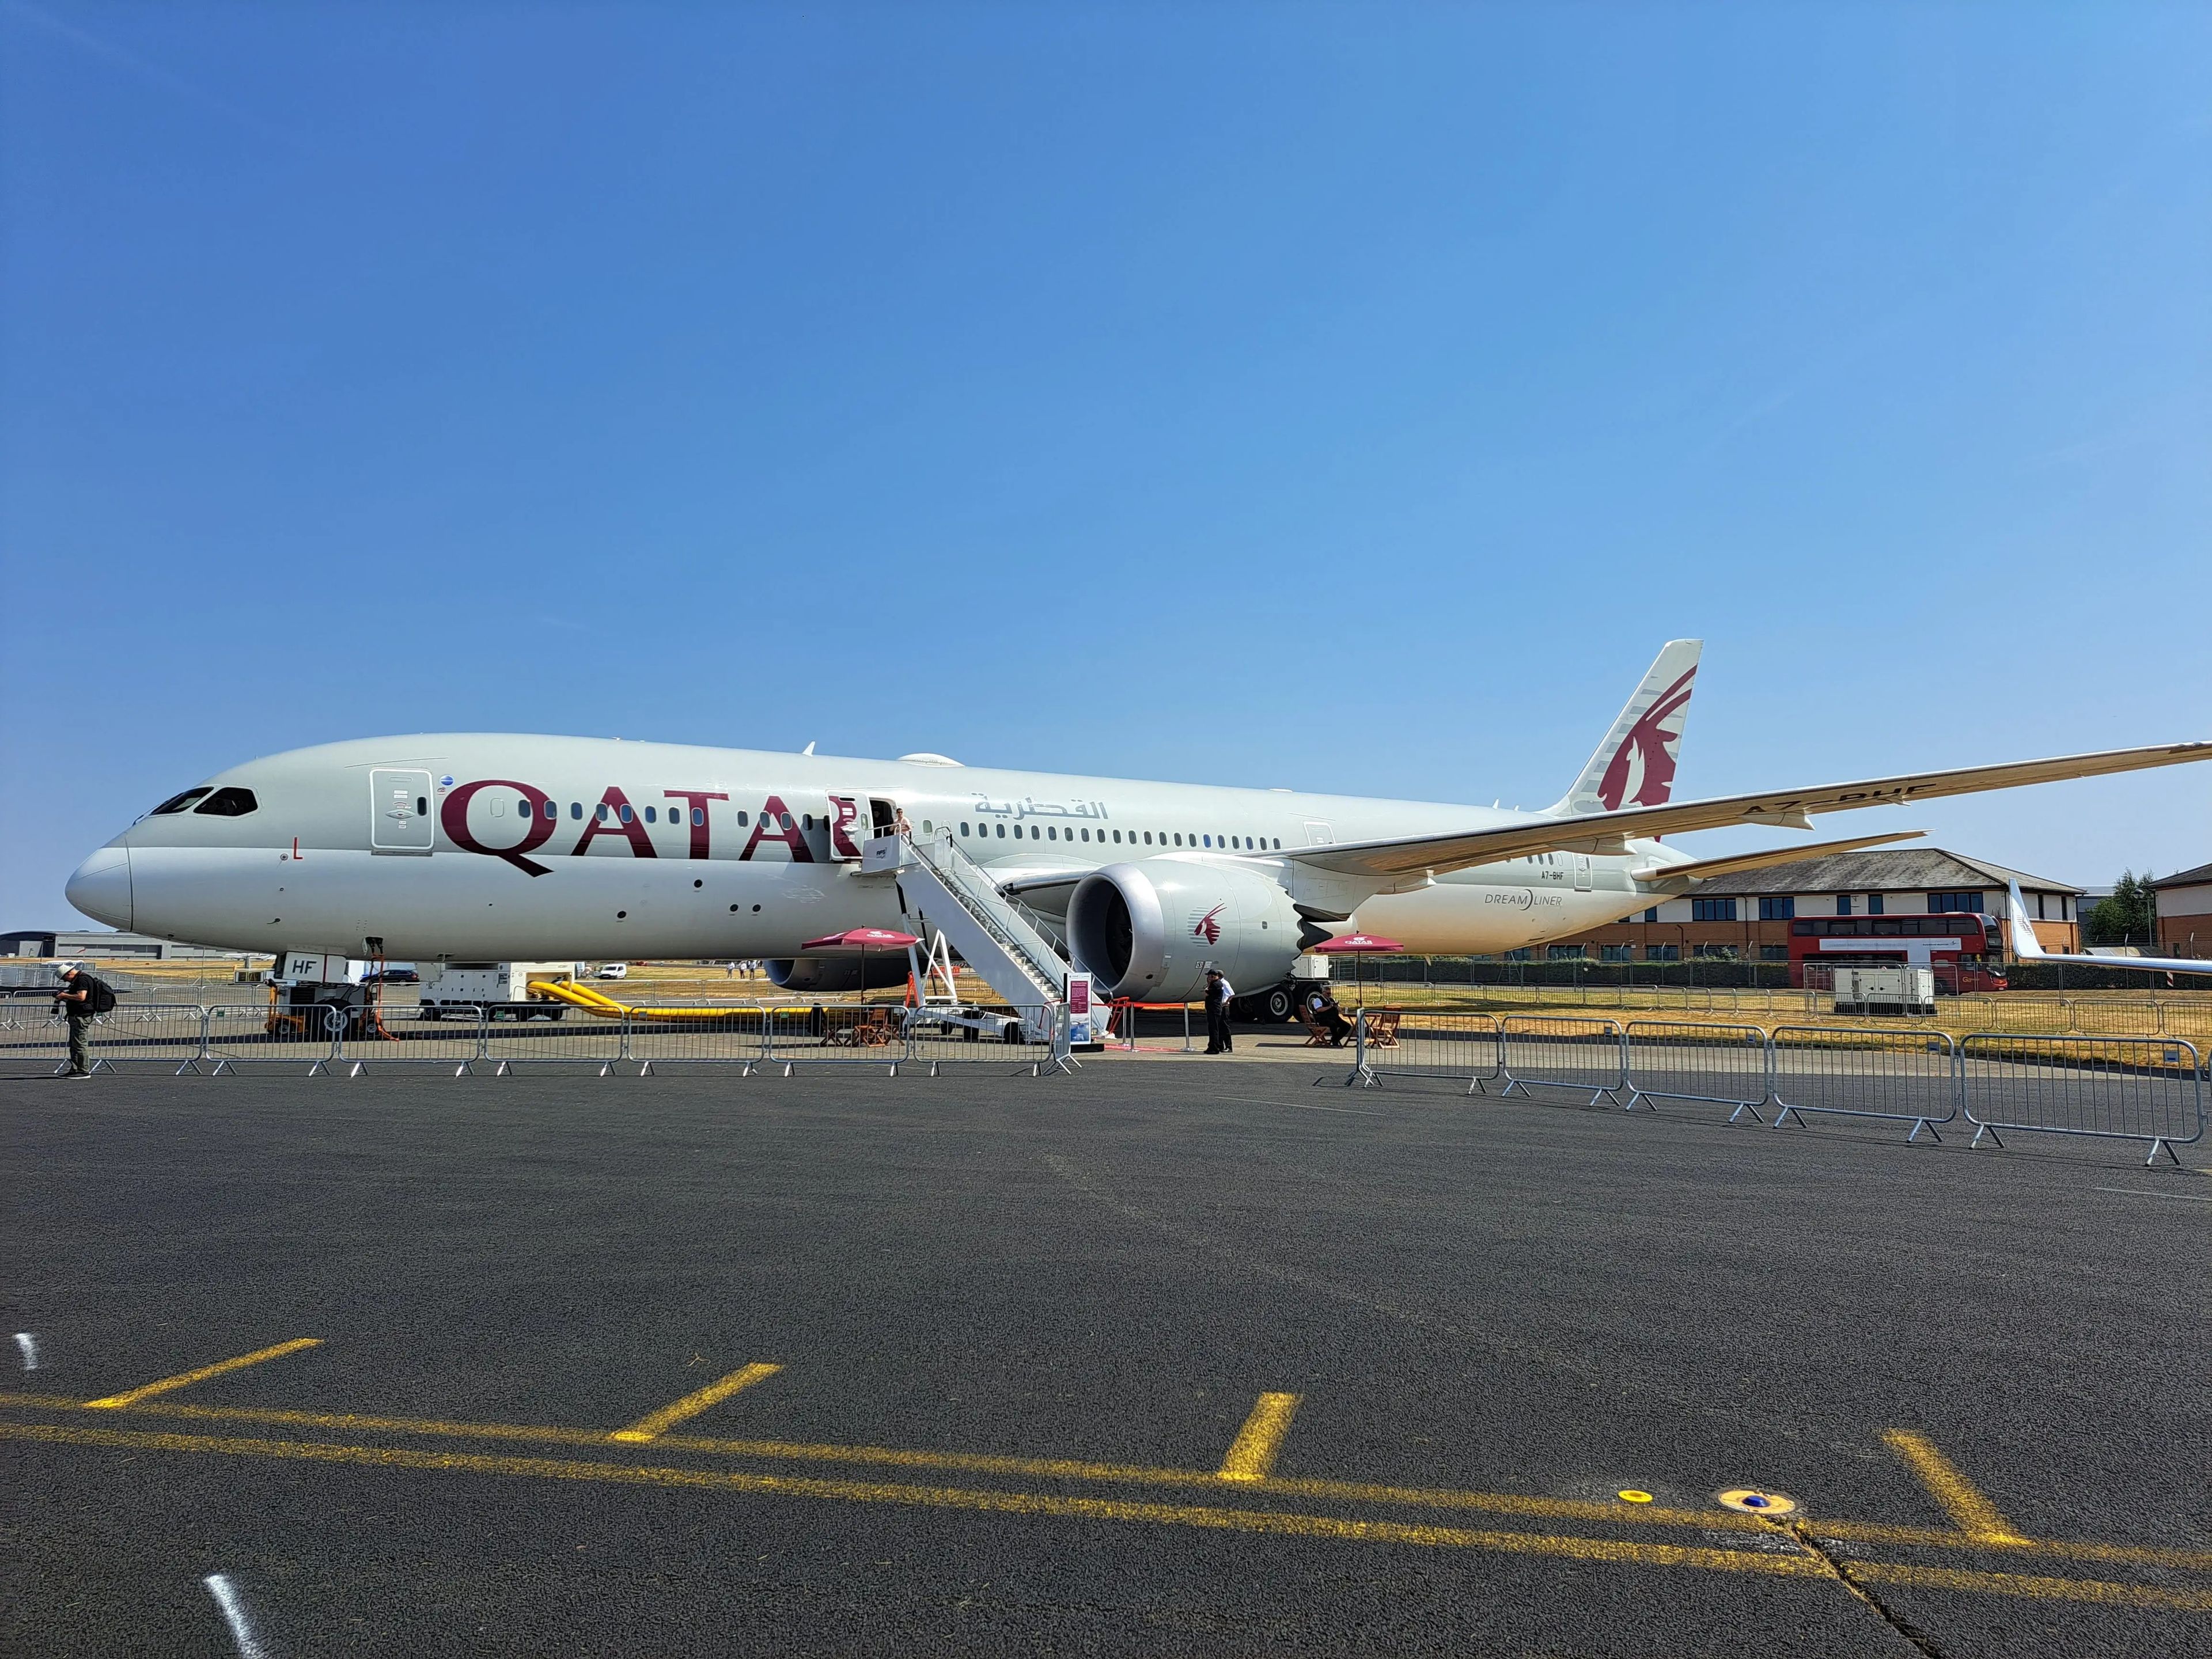 'Business Insider' recorrió uno de los Boeing 787 Dreamliners de Qatar Airways en el Salón Aeronáutico Internacional de Farnborough 2022.